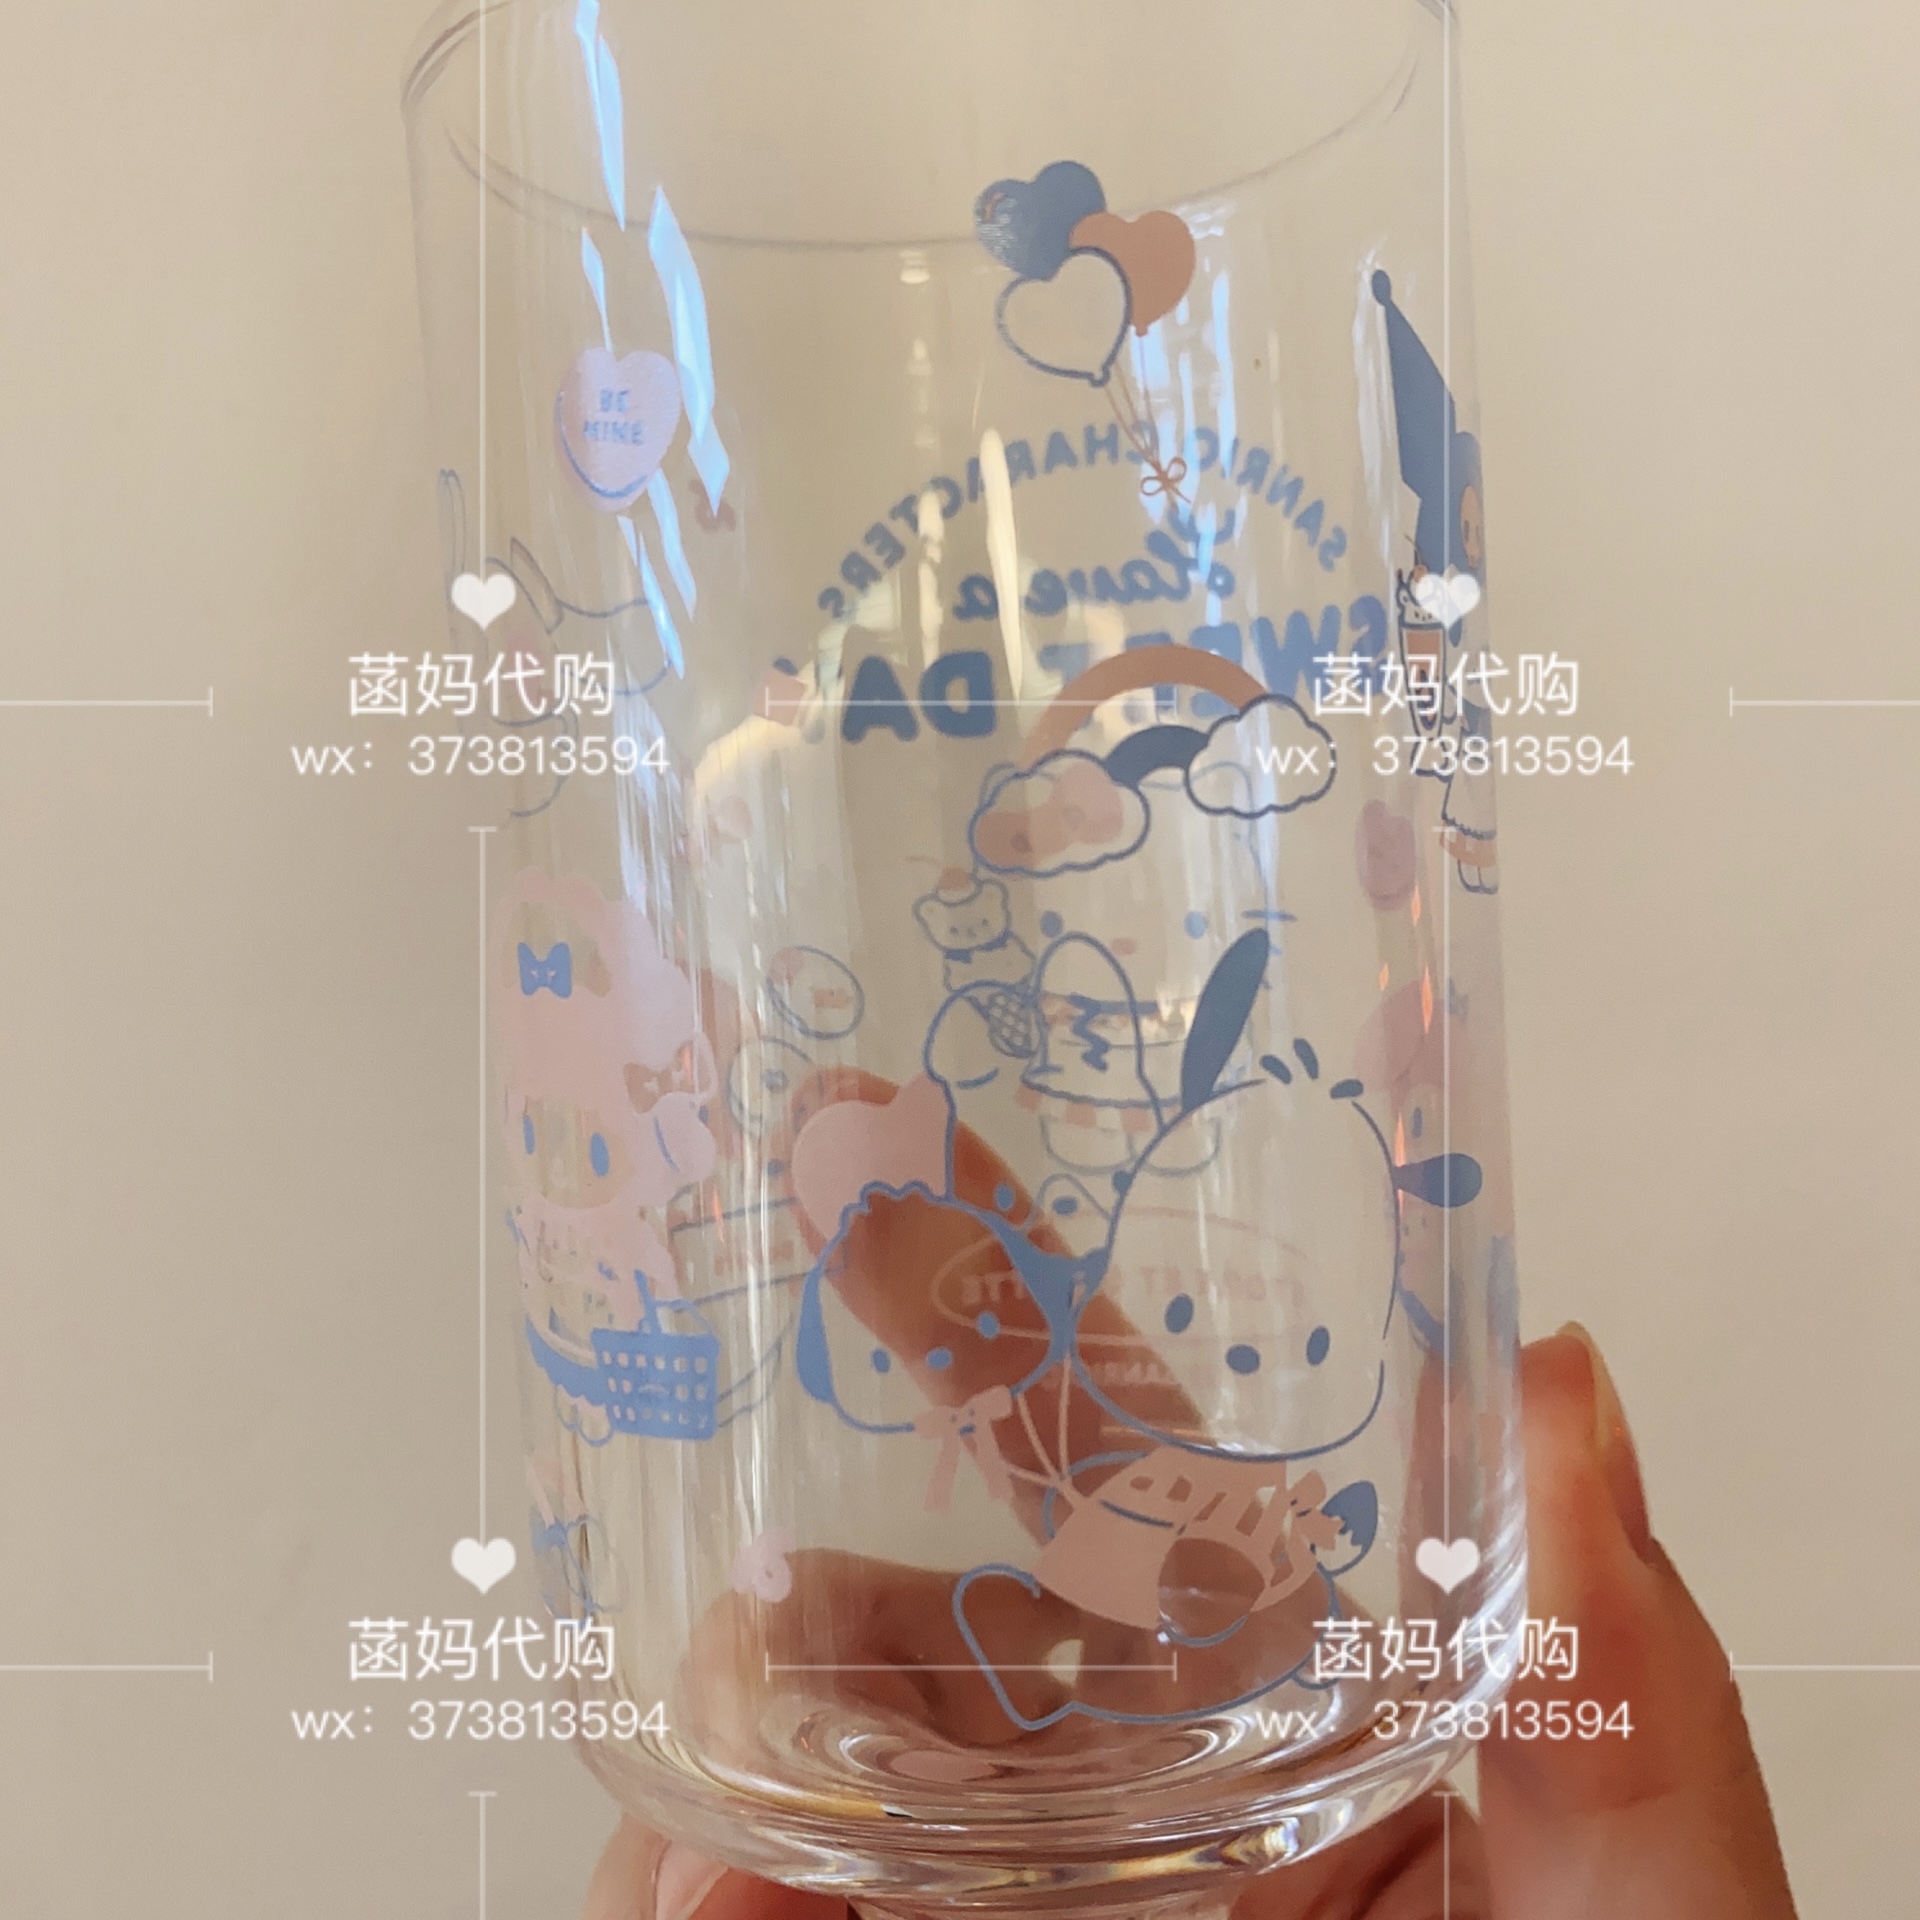 现货日本代购三丽鸥伊势丹联名限定三丽鸥家族玻璃杯高脚杯 - 图1